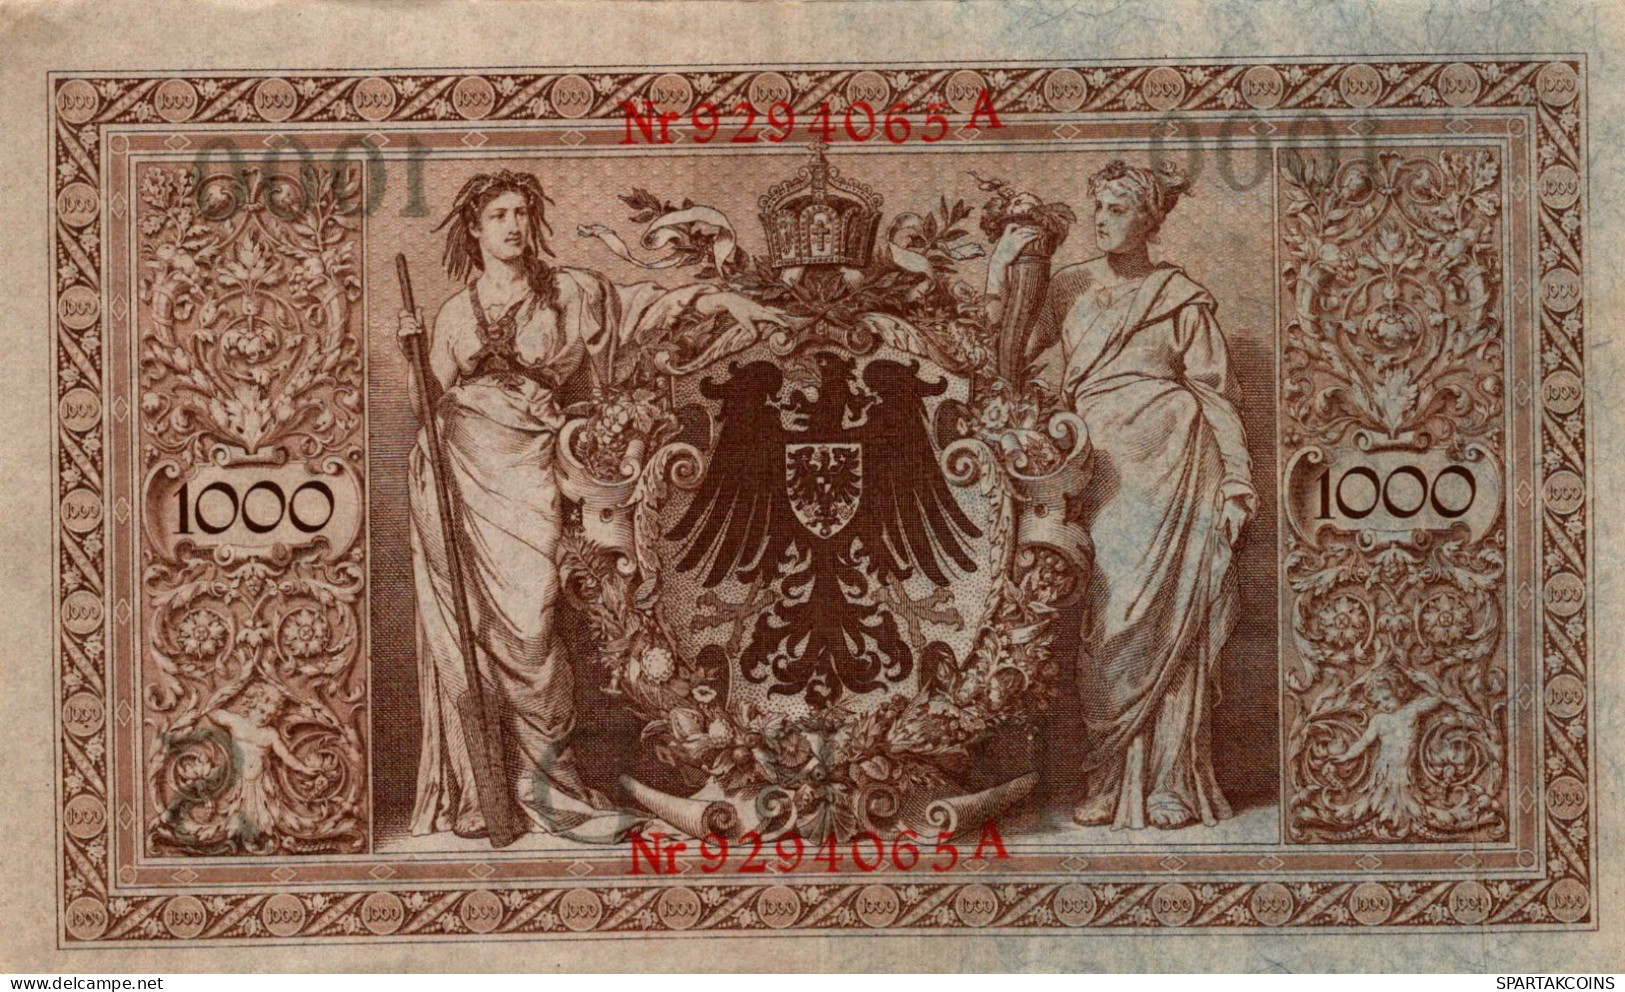 1000 MARK 1910 DEUTSCHLAND Papiergeld Banknote #PL364 - [11] Local Banknote Issues